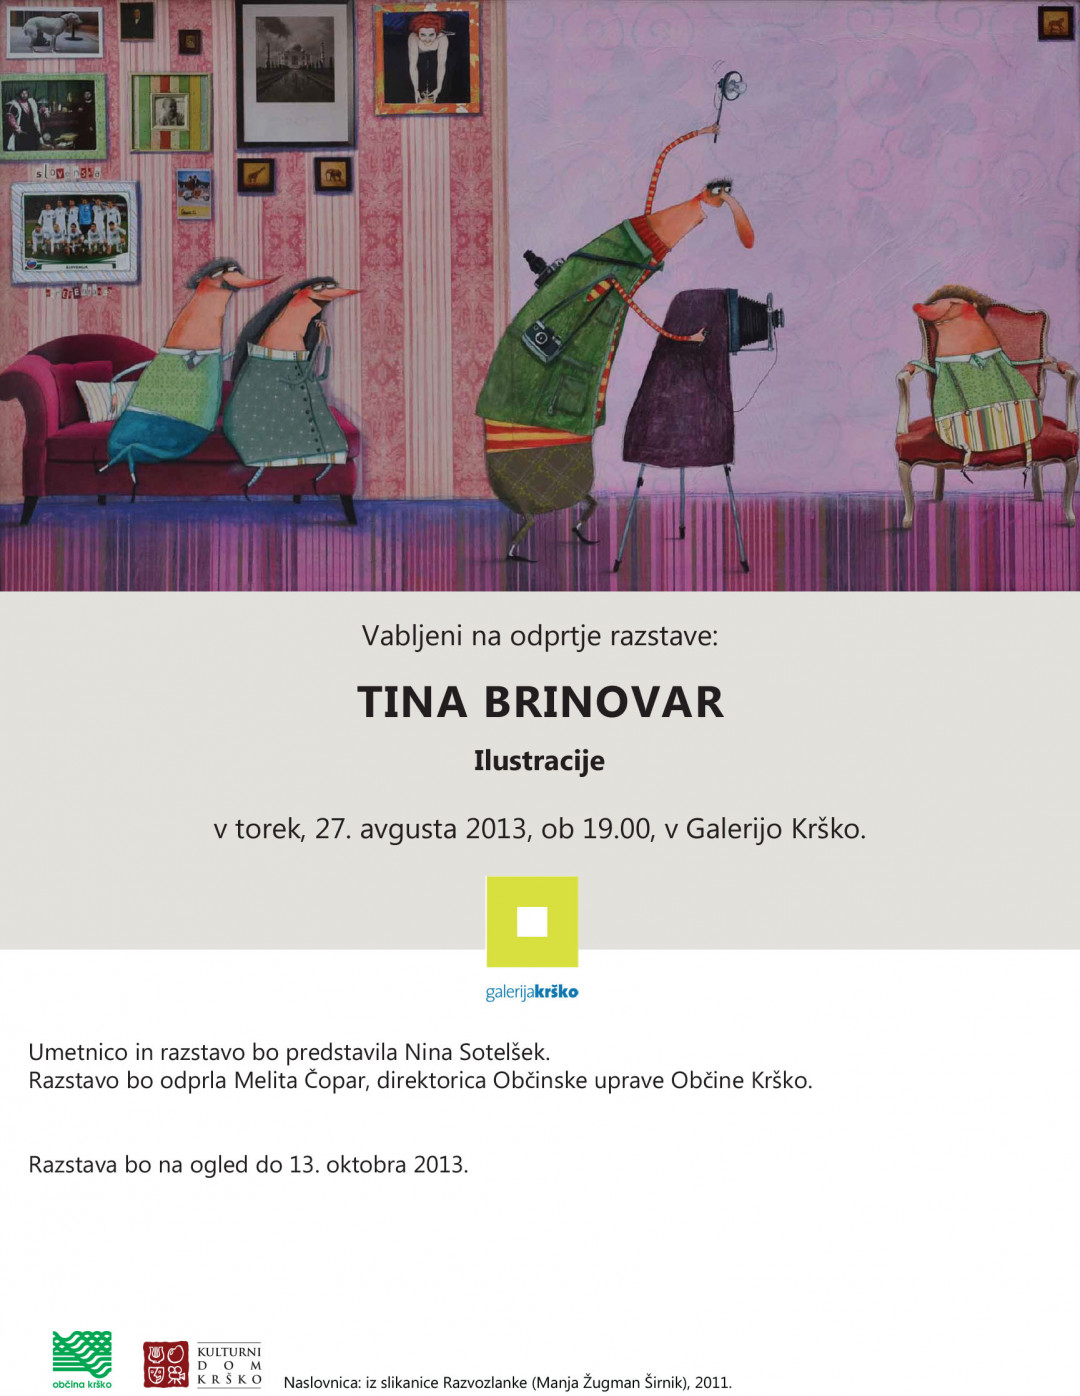 Tina Brinovar: Ilustracije, Galerija Krško